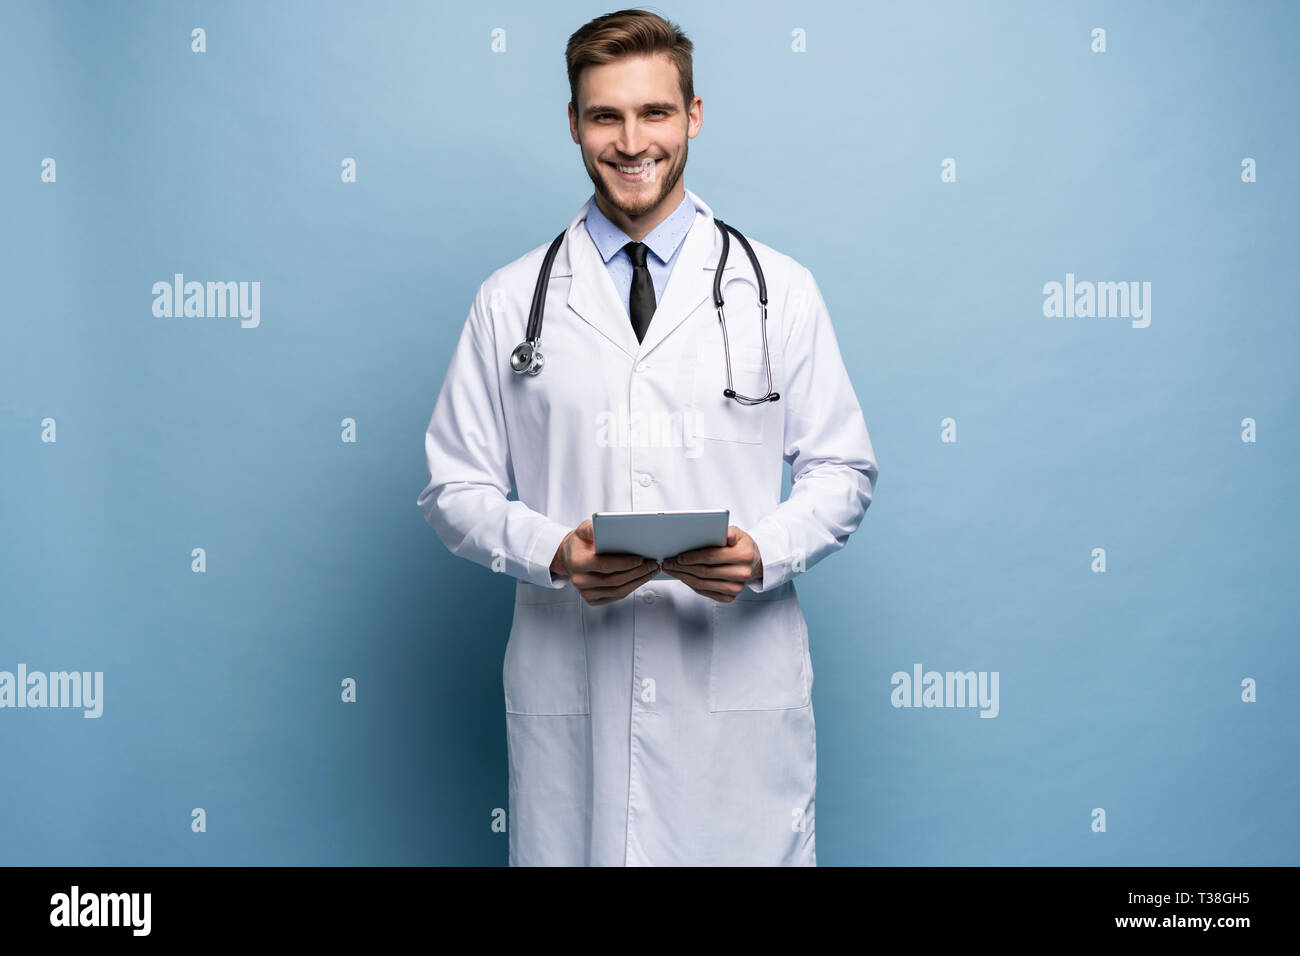 Ritratto di fiducioso giovane medico su sfondo blu. Foto Stock